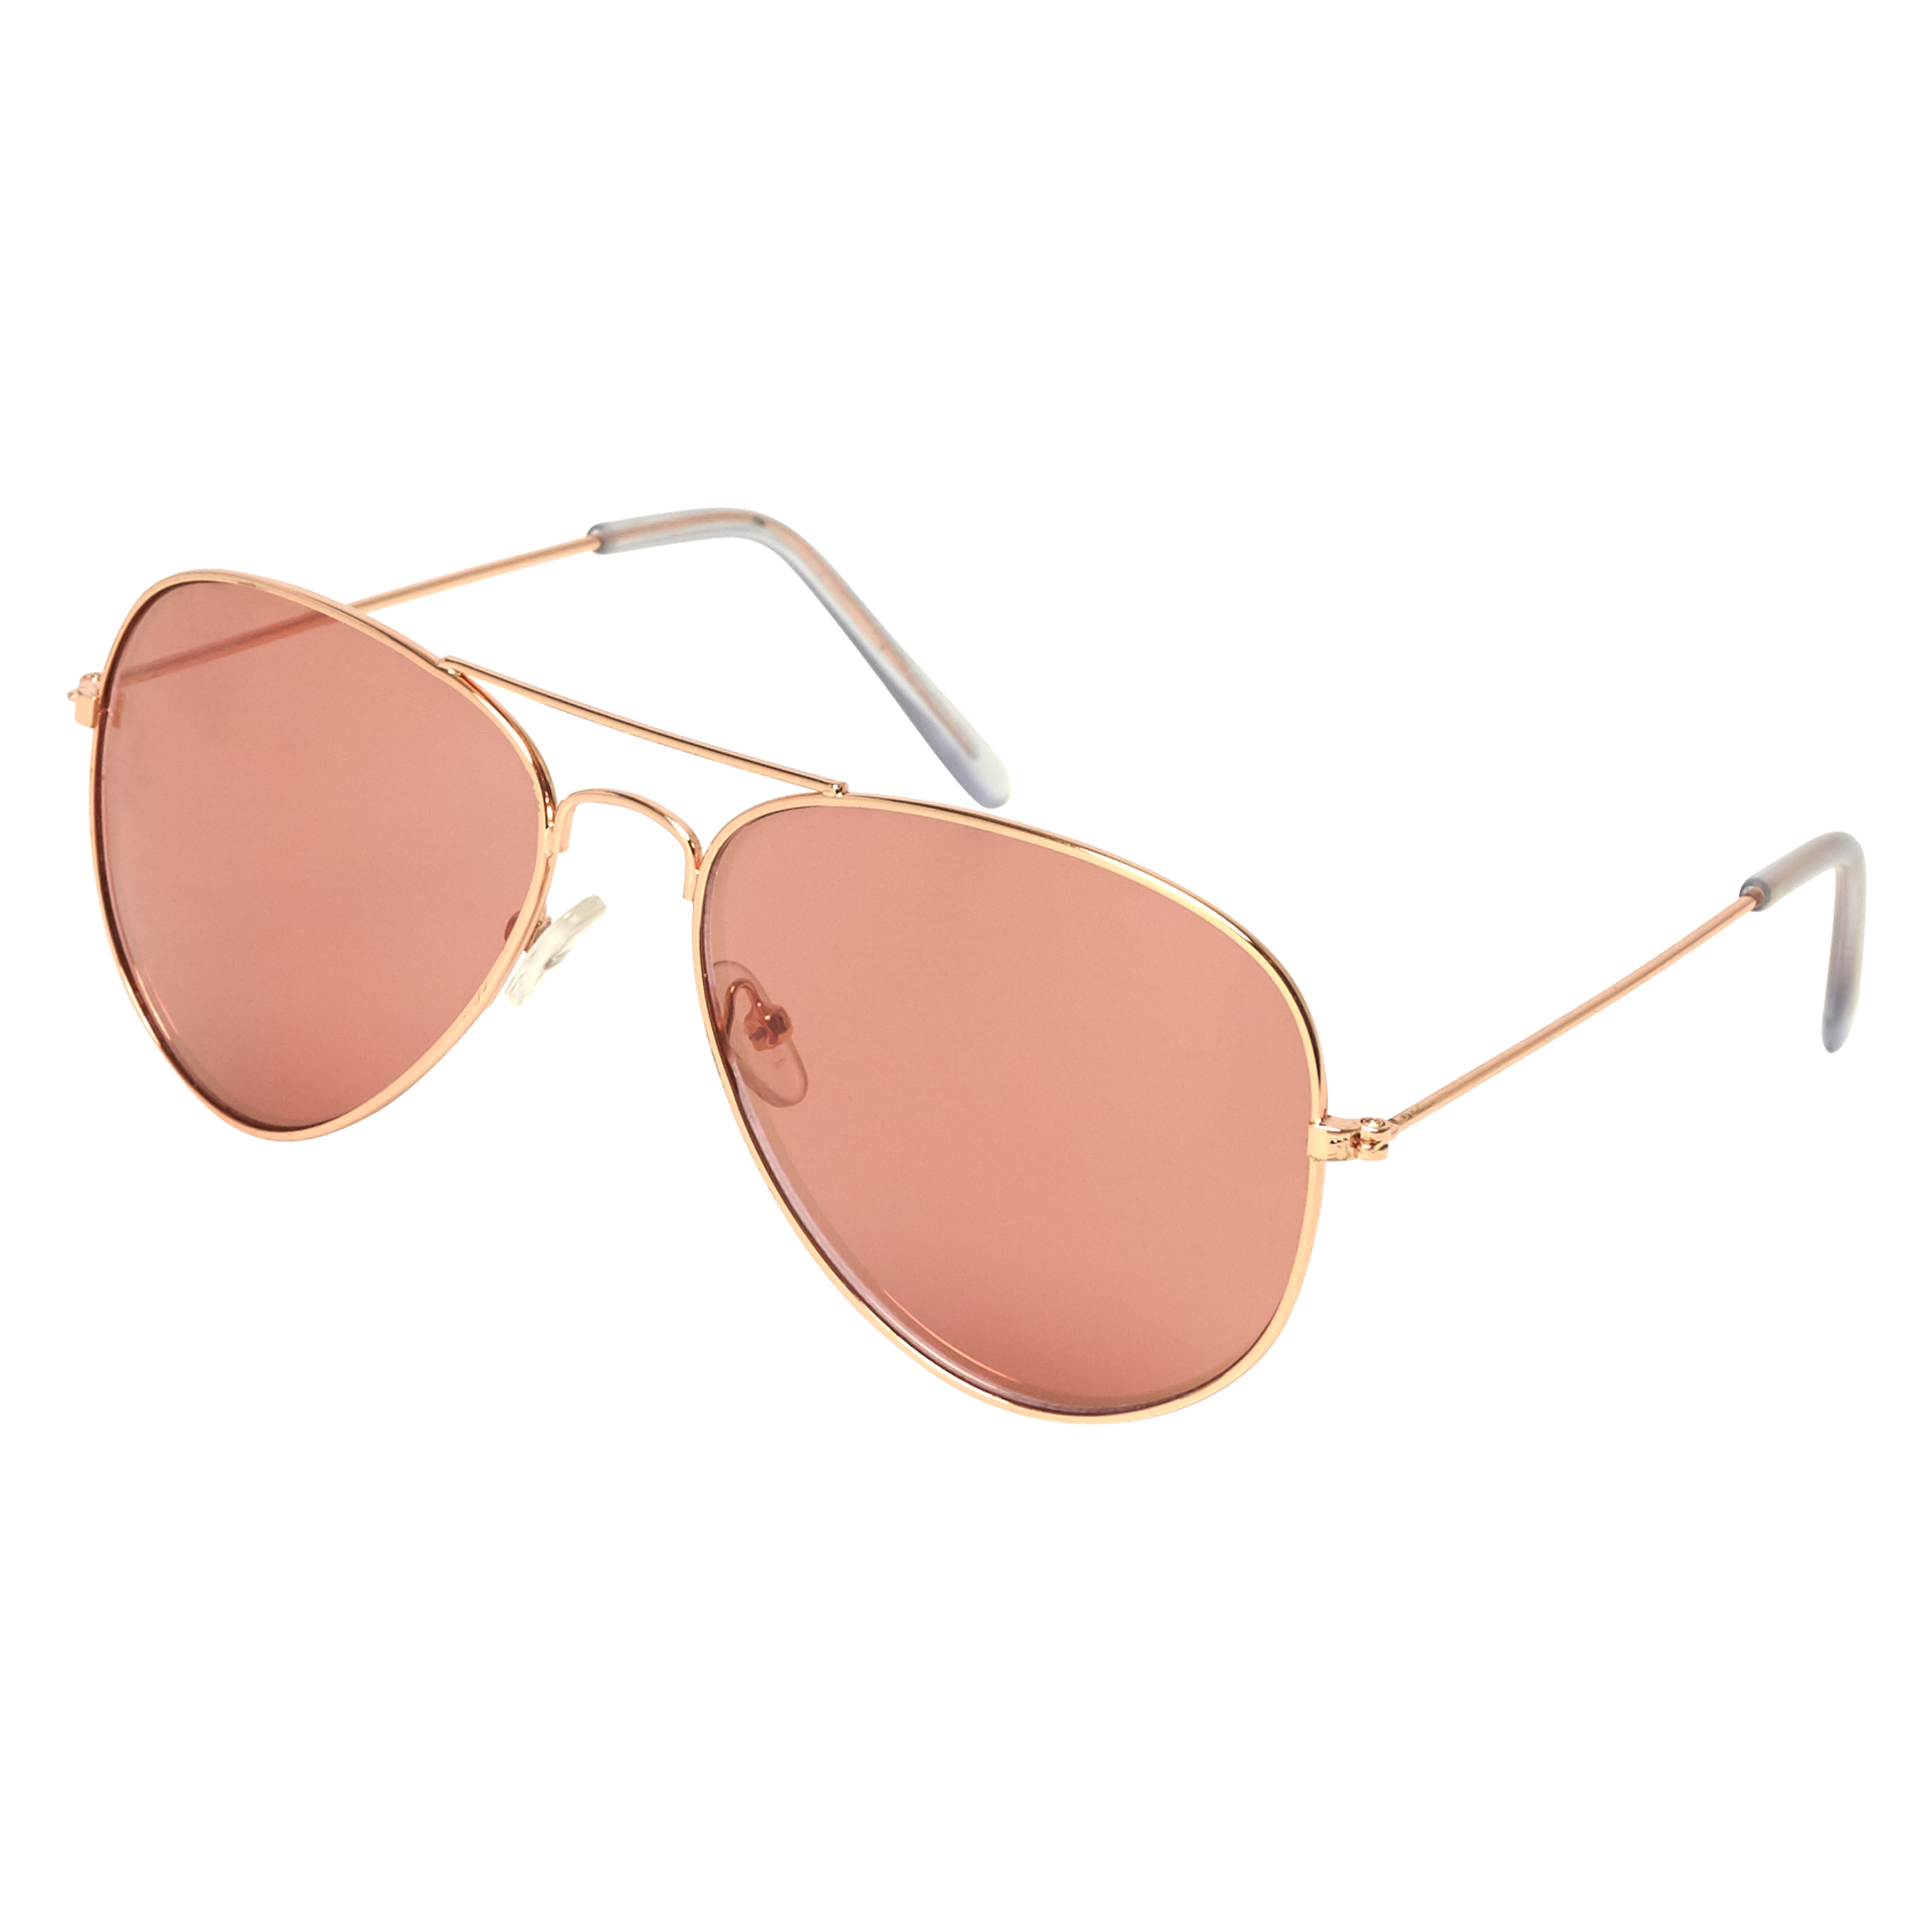 Sunglasses Aviator, Pink, main